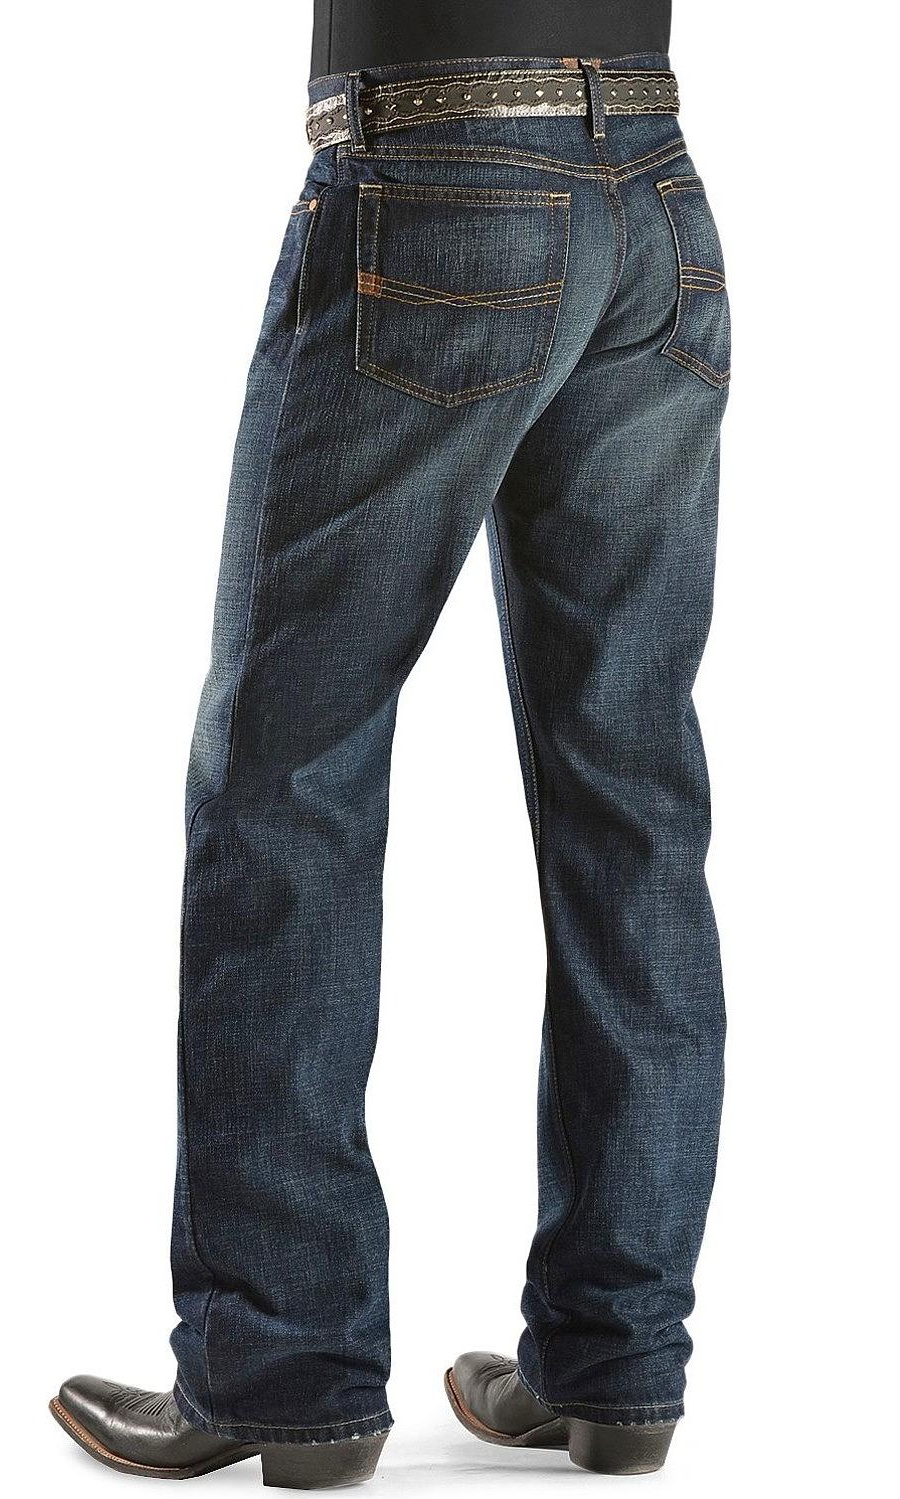 ARIAT Mens M4 Low Rise Jean - image 1 of 2